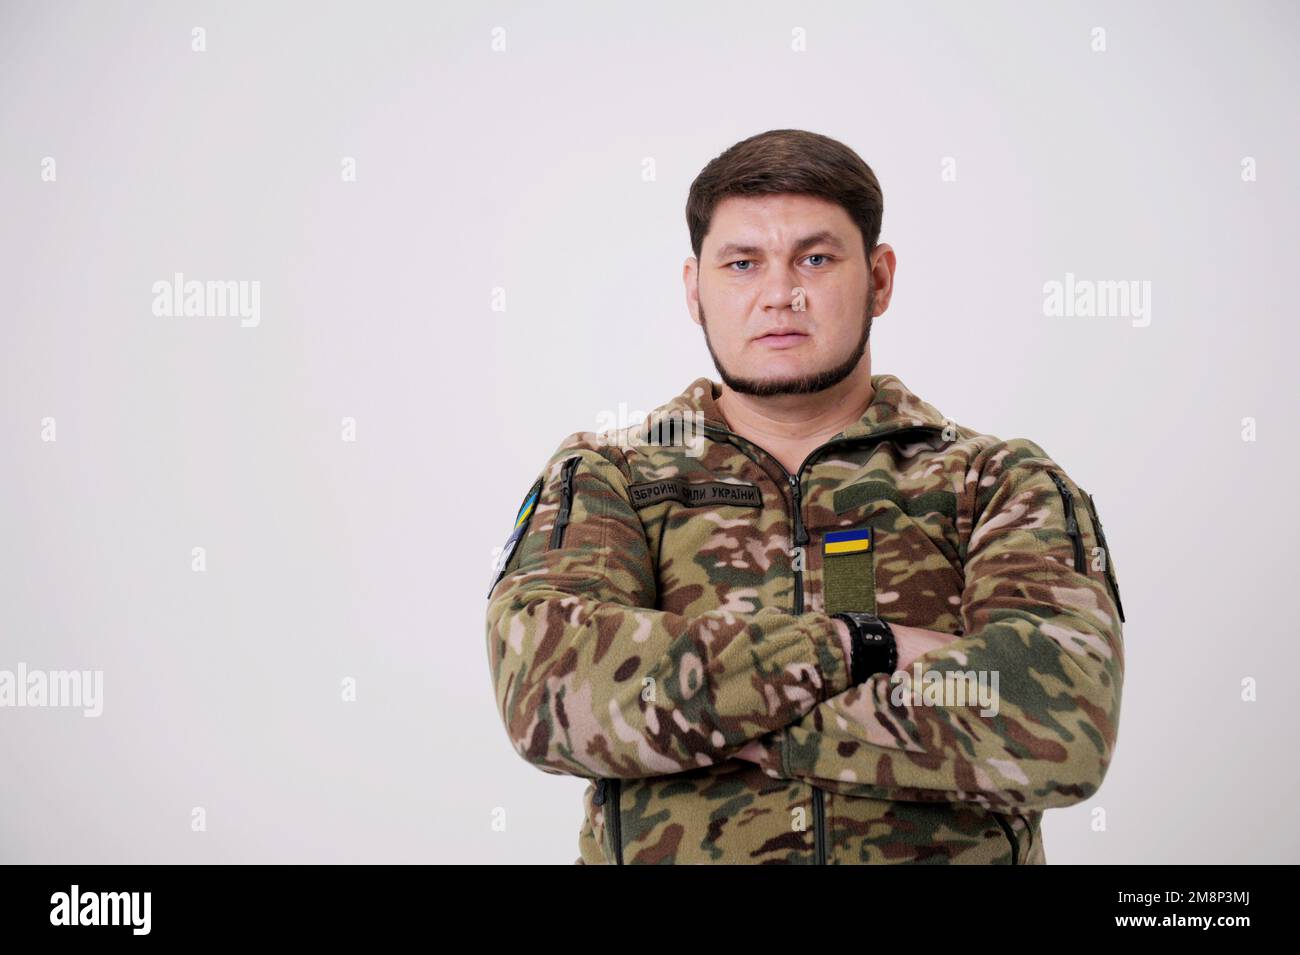 Ukrainischer Soldat in Militäruniform mit Flagge und Chevron, das ein ukrainisches Dreizack-Emblem und ein nationales Symbol in der Mitte der Standing Army Soldier Standing Armed Forces of Ukraine darstellt. Ukrainischer Soldat Stockfoto